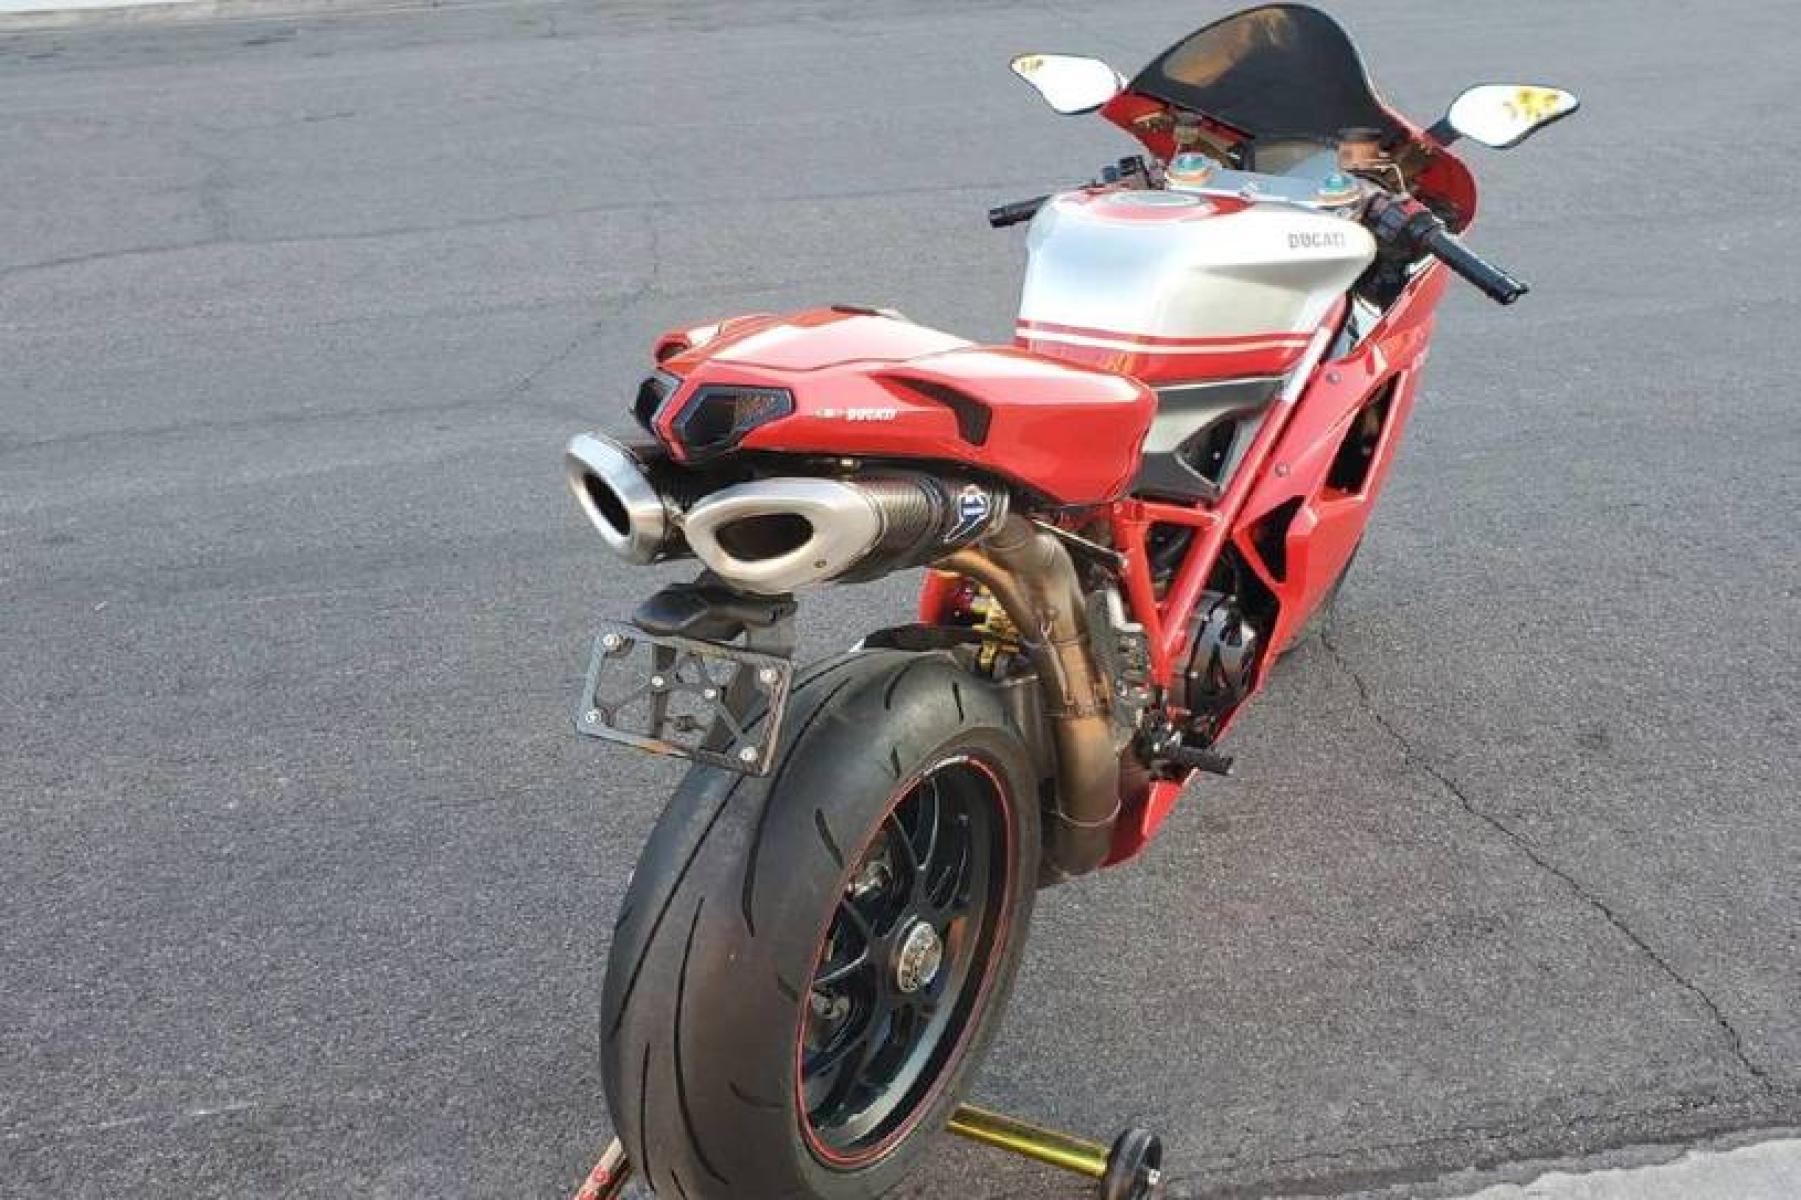 2008 Ducati 1099 S S (ZDM1XBEW18B) with an 1,098 cc L twin engine, Six-Speed Dry Clutch transmission, located at 3160 South Valley View Blvd, Las Vegas, NV, 89146, (888) 750-6845, 36.132458, -115.190247 - b64:VGhlIER1Y2F0aSAxMDk4UyBib2FzdHMgc29tZSBnb3JnZW91cyBib2R5d29yayBhbmQgc2xpY2sgZGVzaWduIGN1ZXMsIGJ1dCBpdHMgcmVhbCBtYXN0ZXJwaWVjZSBsaWVzIGJlbmVhdGggdGhvc2UgcHJldHR5IHBsYXN0aWMgcGFuZWxzLiBVbmRlcm5lYXRoIGlzIGEgdHVidWxhciBzdGVlbCB0cmVsbGlzIGZyYW1lIG9wdGltaXplZCBmb3Igc3RpZmZuZXNzLCBhbmQgYW4gTC10d2luIGVu - Photo #3